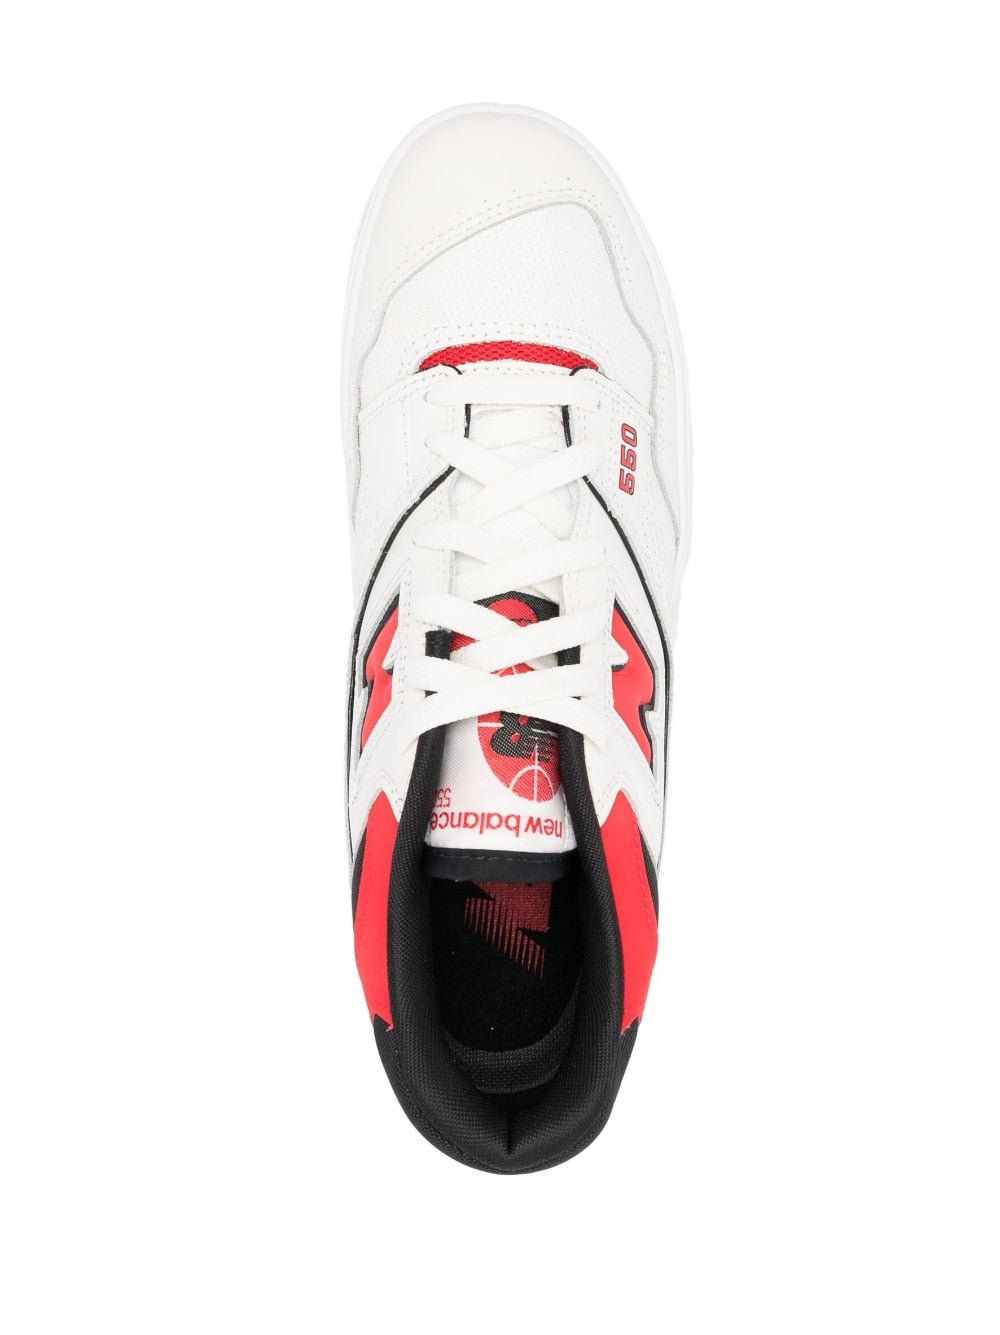 Sneaker 550 in pelle colore bianco/rosso